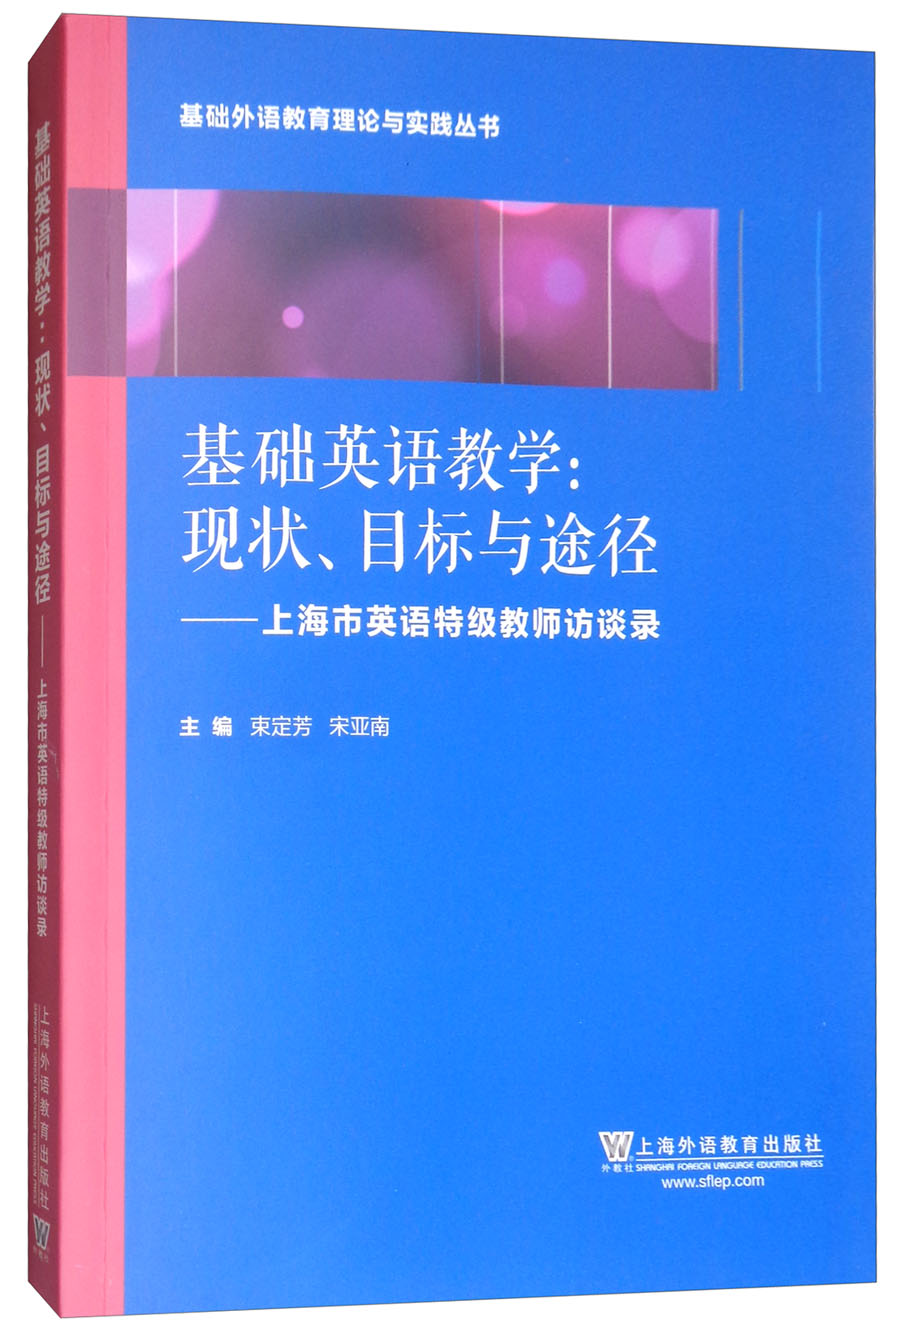 基础外语教育理论与实践丛书·基础英语教学·现状、目标与途径：上海英语特级教师访谈录 epub格式下载